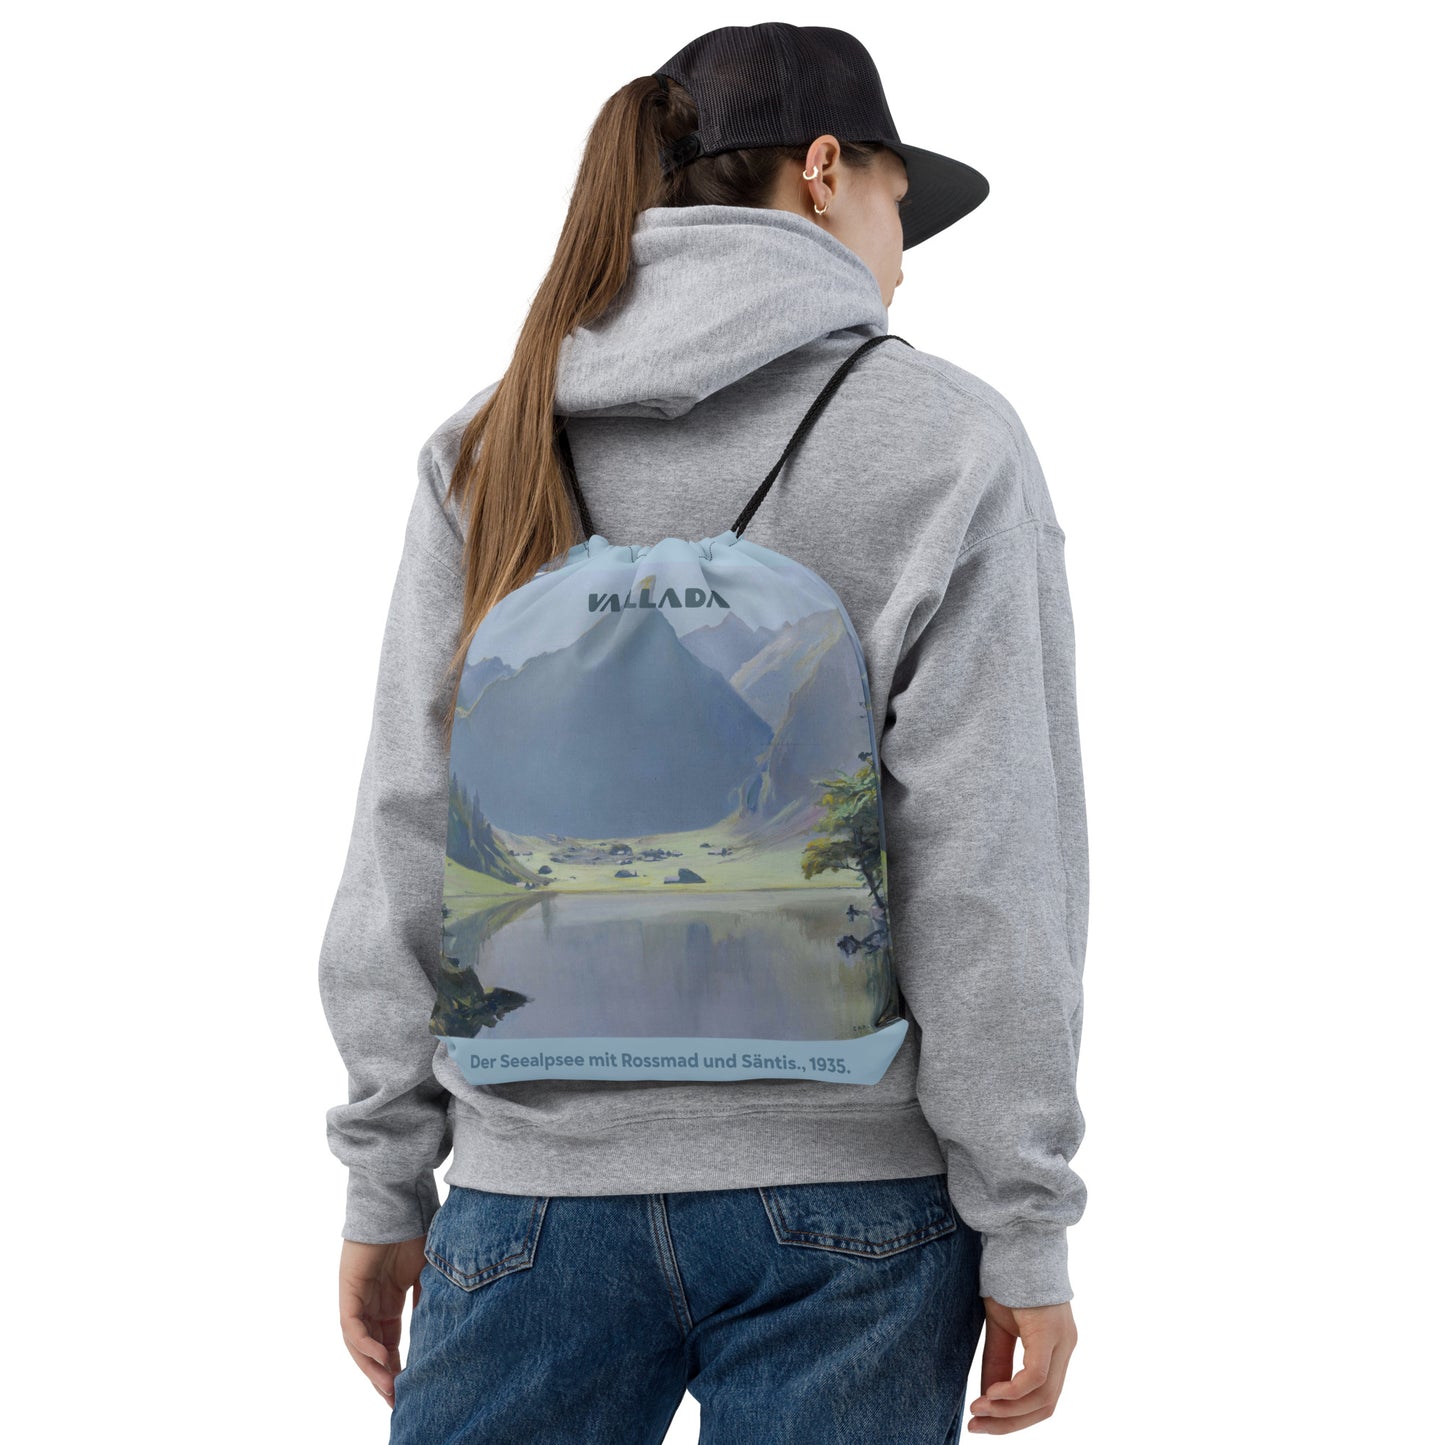 Turnbeutel mit Bild des Seealpsees, der vom Modell auf dem Rücken getragen wird.